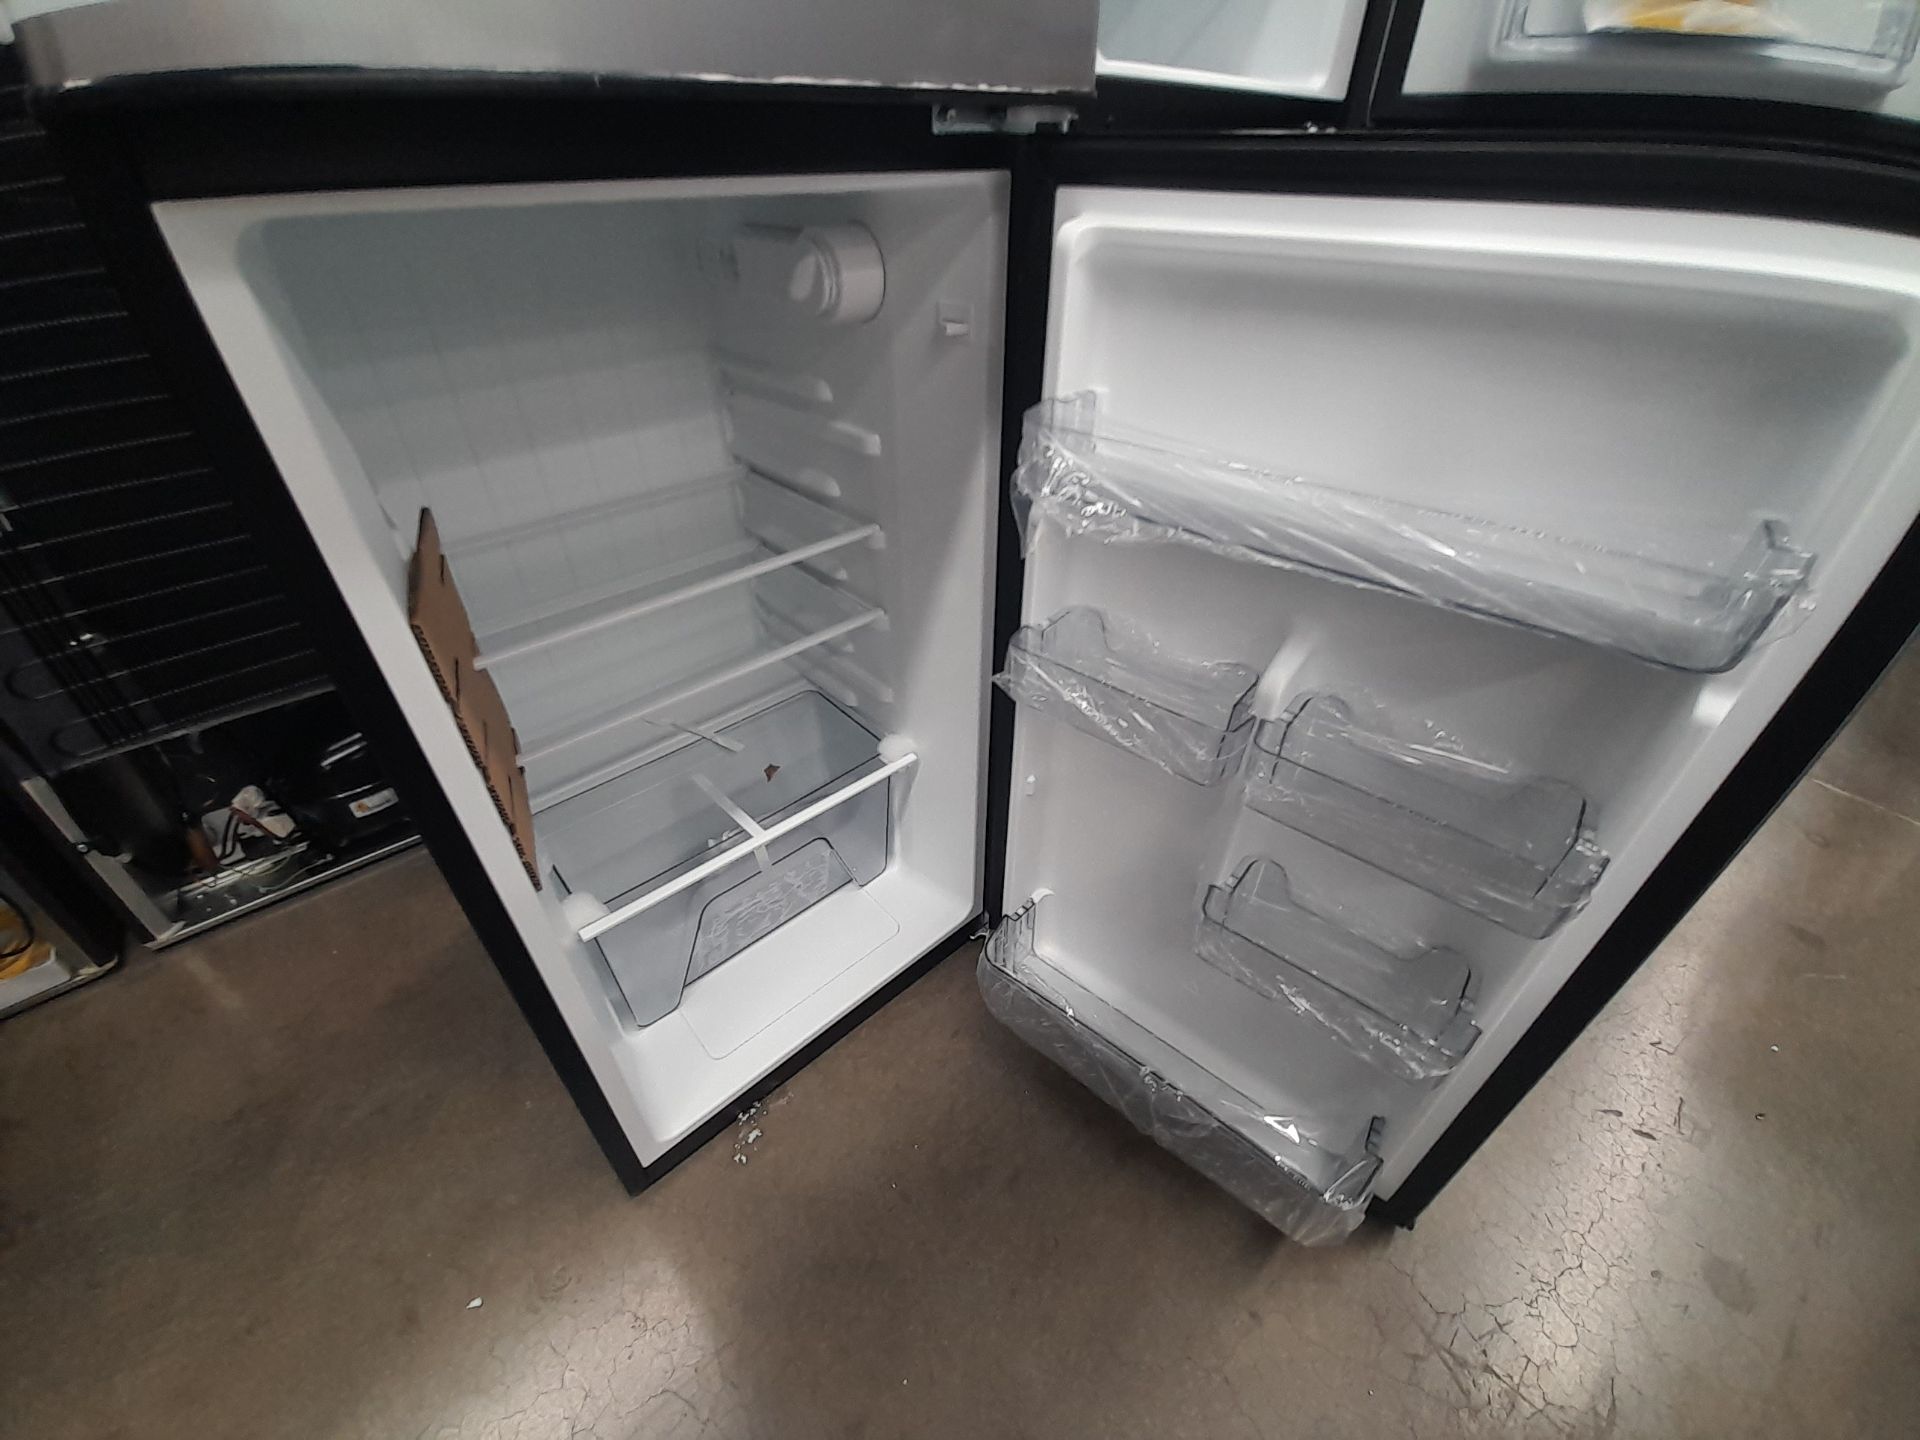 Lote de 2 refrigeradores contiene: 1 refrigerador Marca GALANZ, Modelo GLR55TS1, Serie ND, Colo - Image 7 of 8